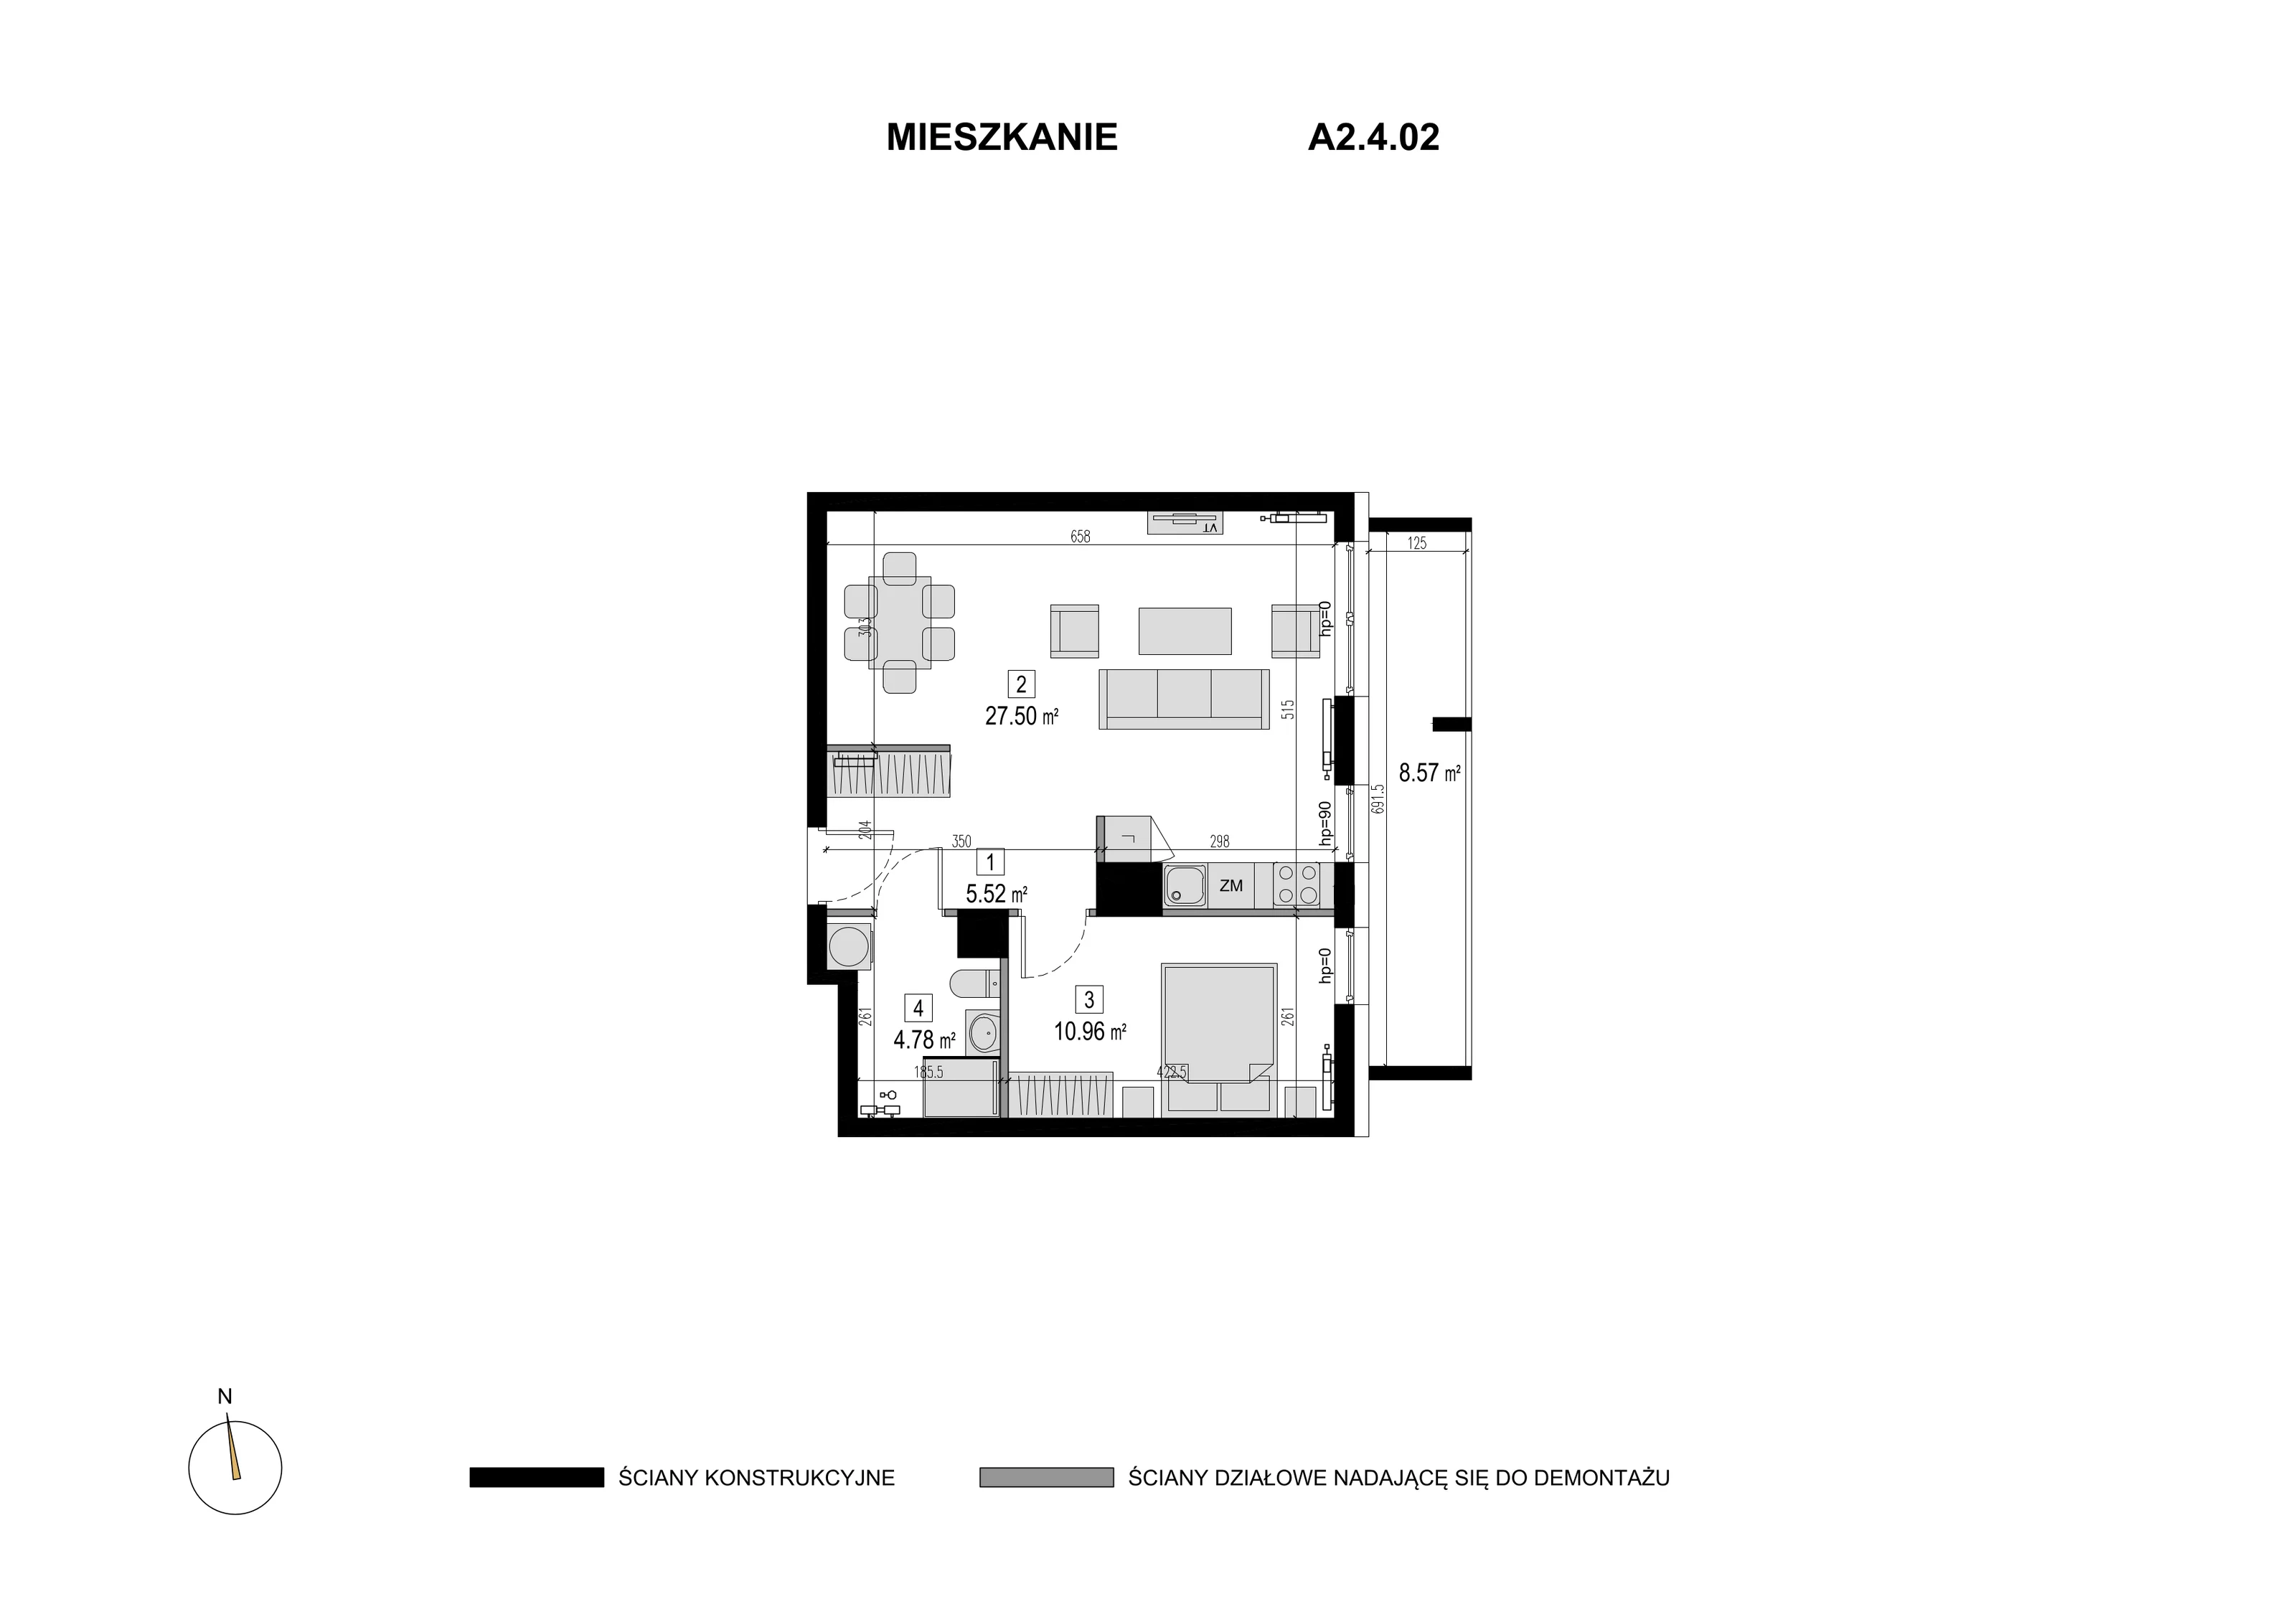 Mieszkanie 48,76 m², piętro 3, oferta nr A2.4.02, Novaforma, Legnica, ul. Chojnowska